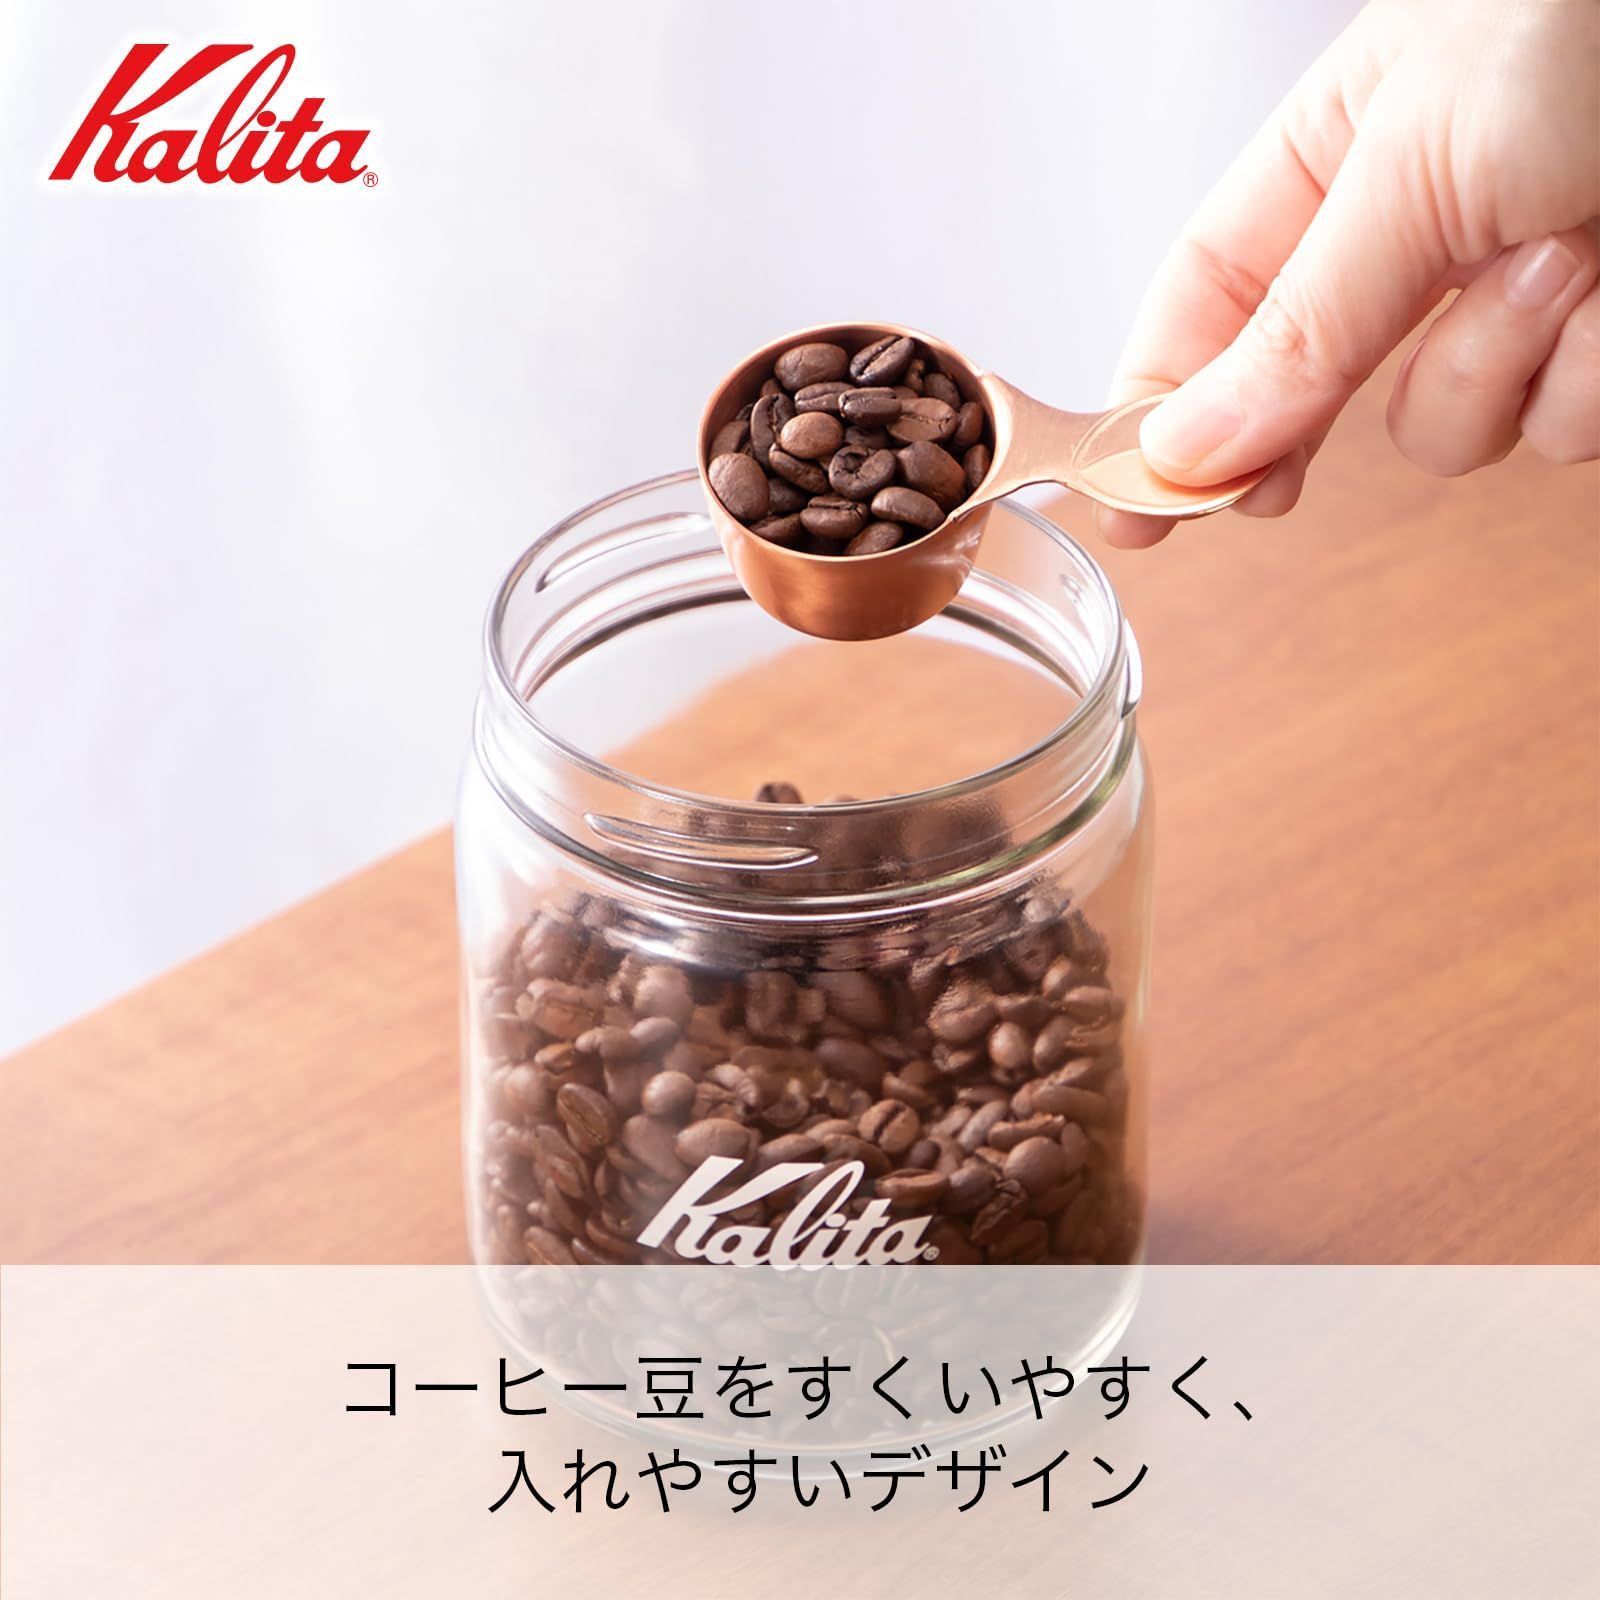 【数量限定】カリタ Kalita コーヒーメジャー 銅製 type B #44020